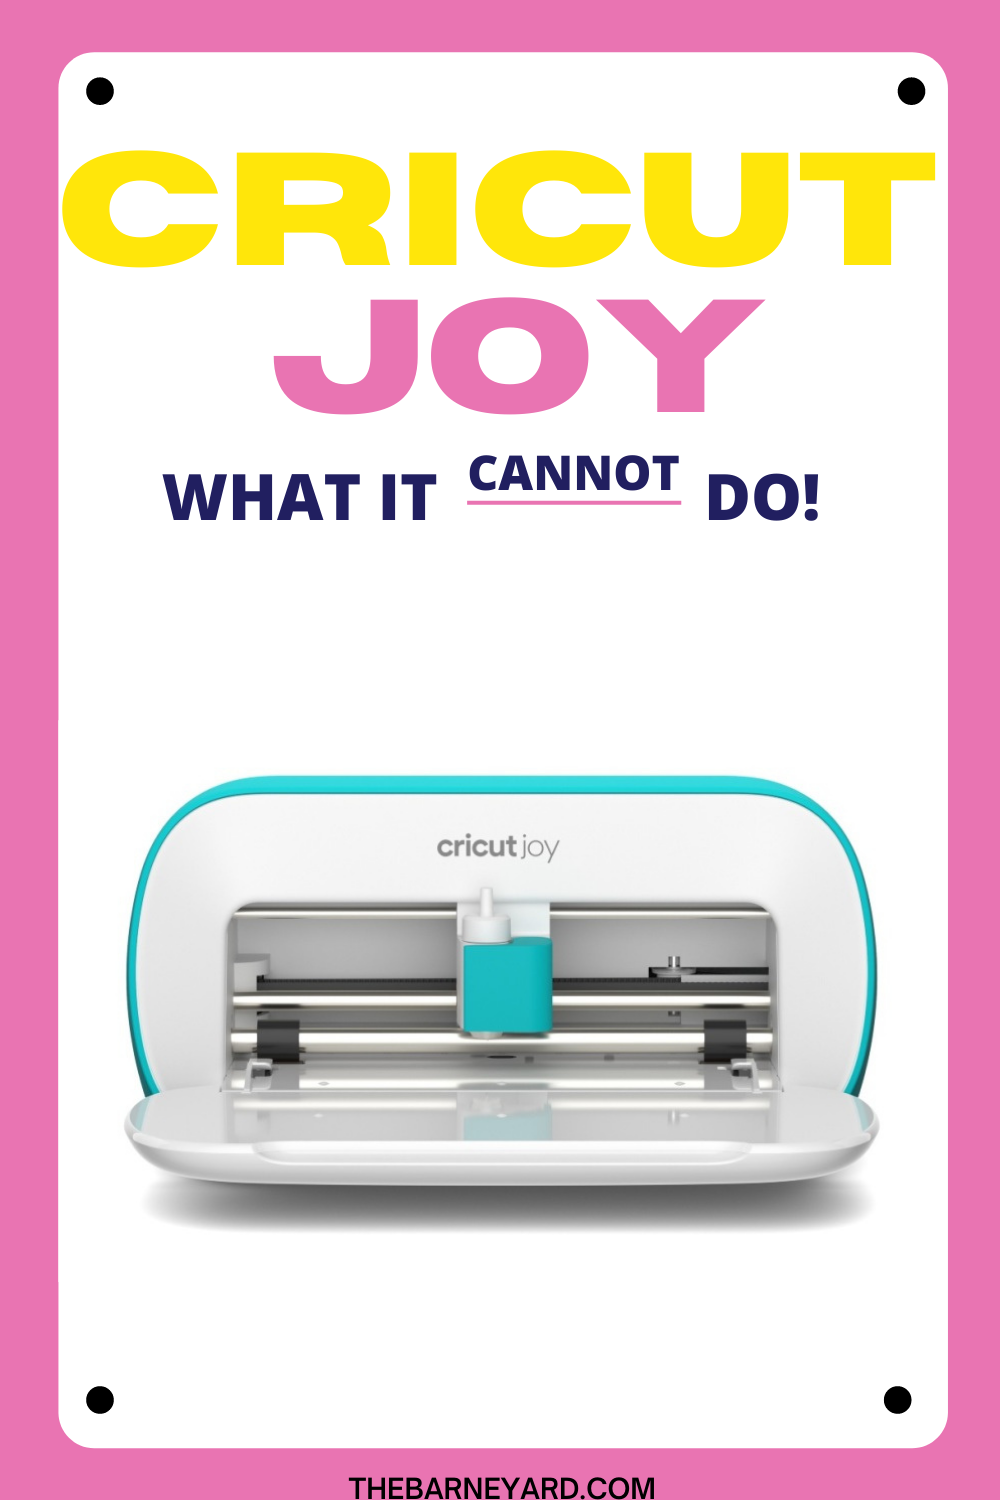 What is the Cricut Joy